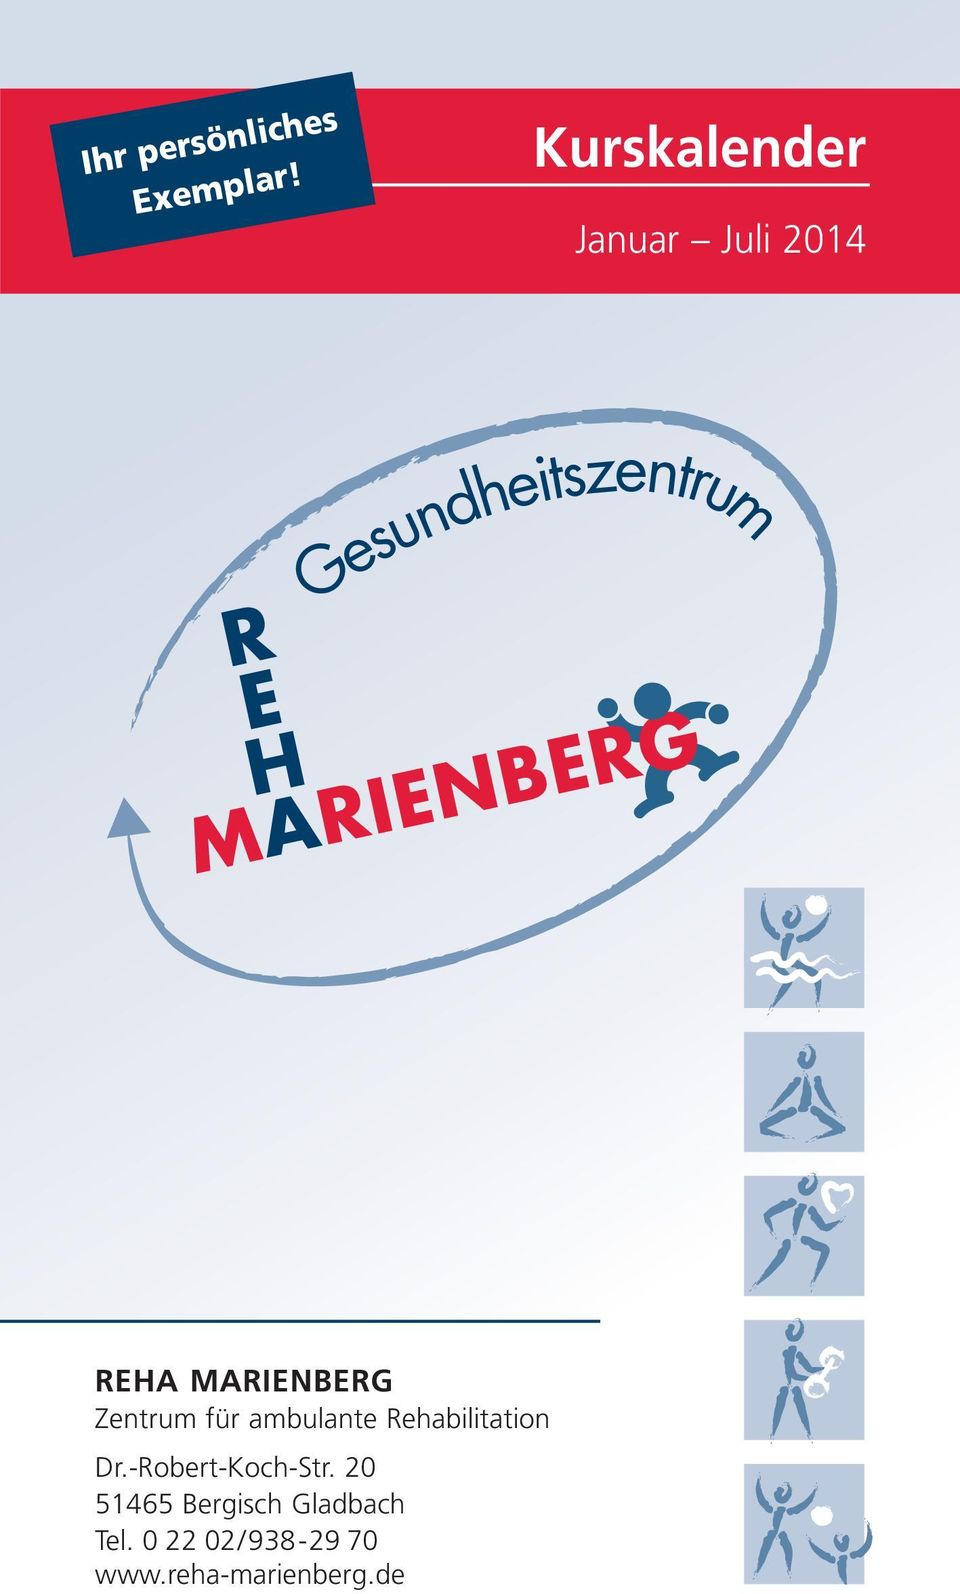 MARIENBER REHA MARIENBERG Zentrum für ambulante